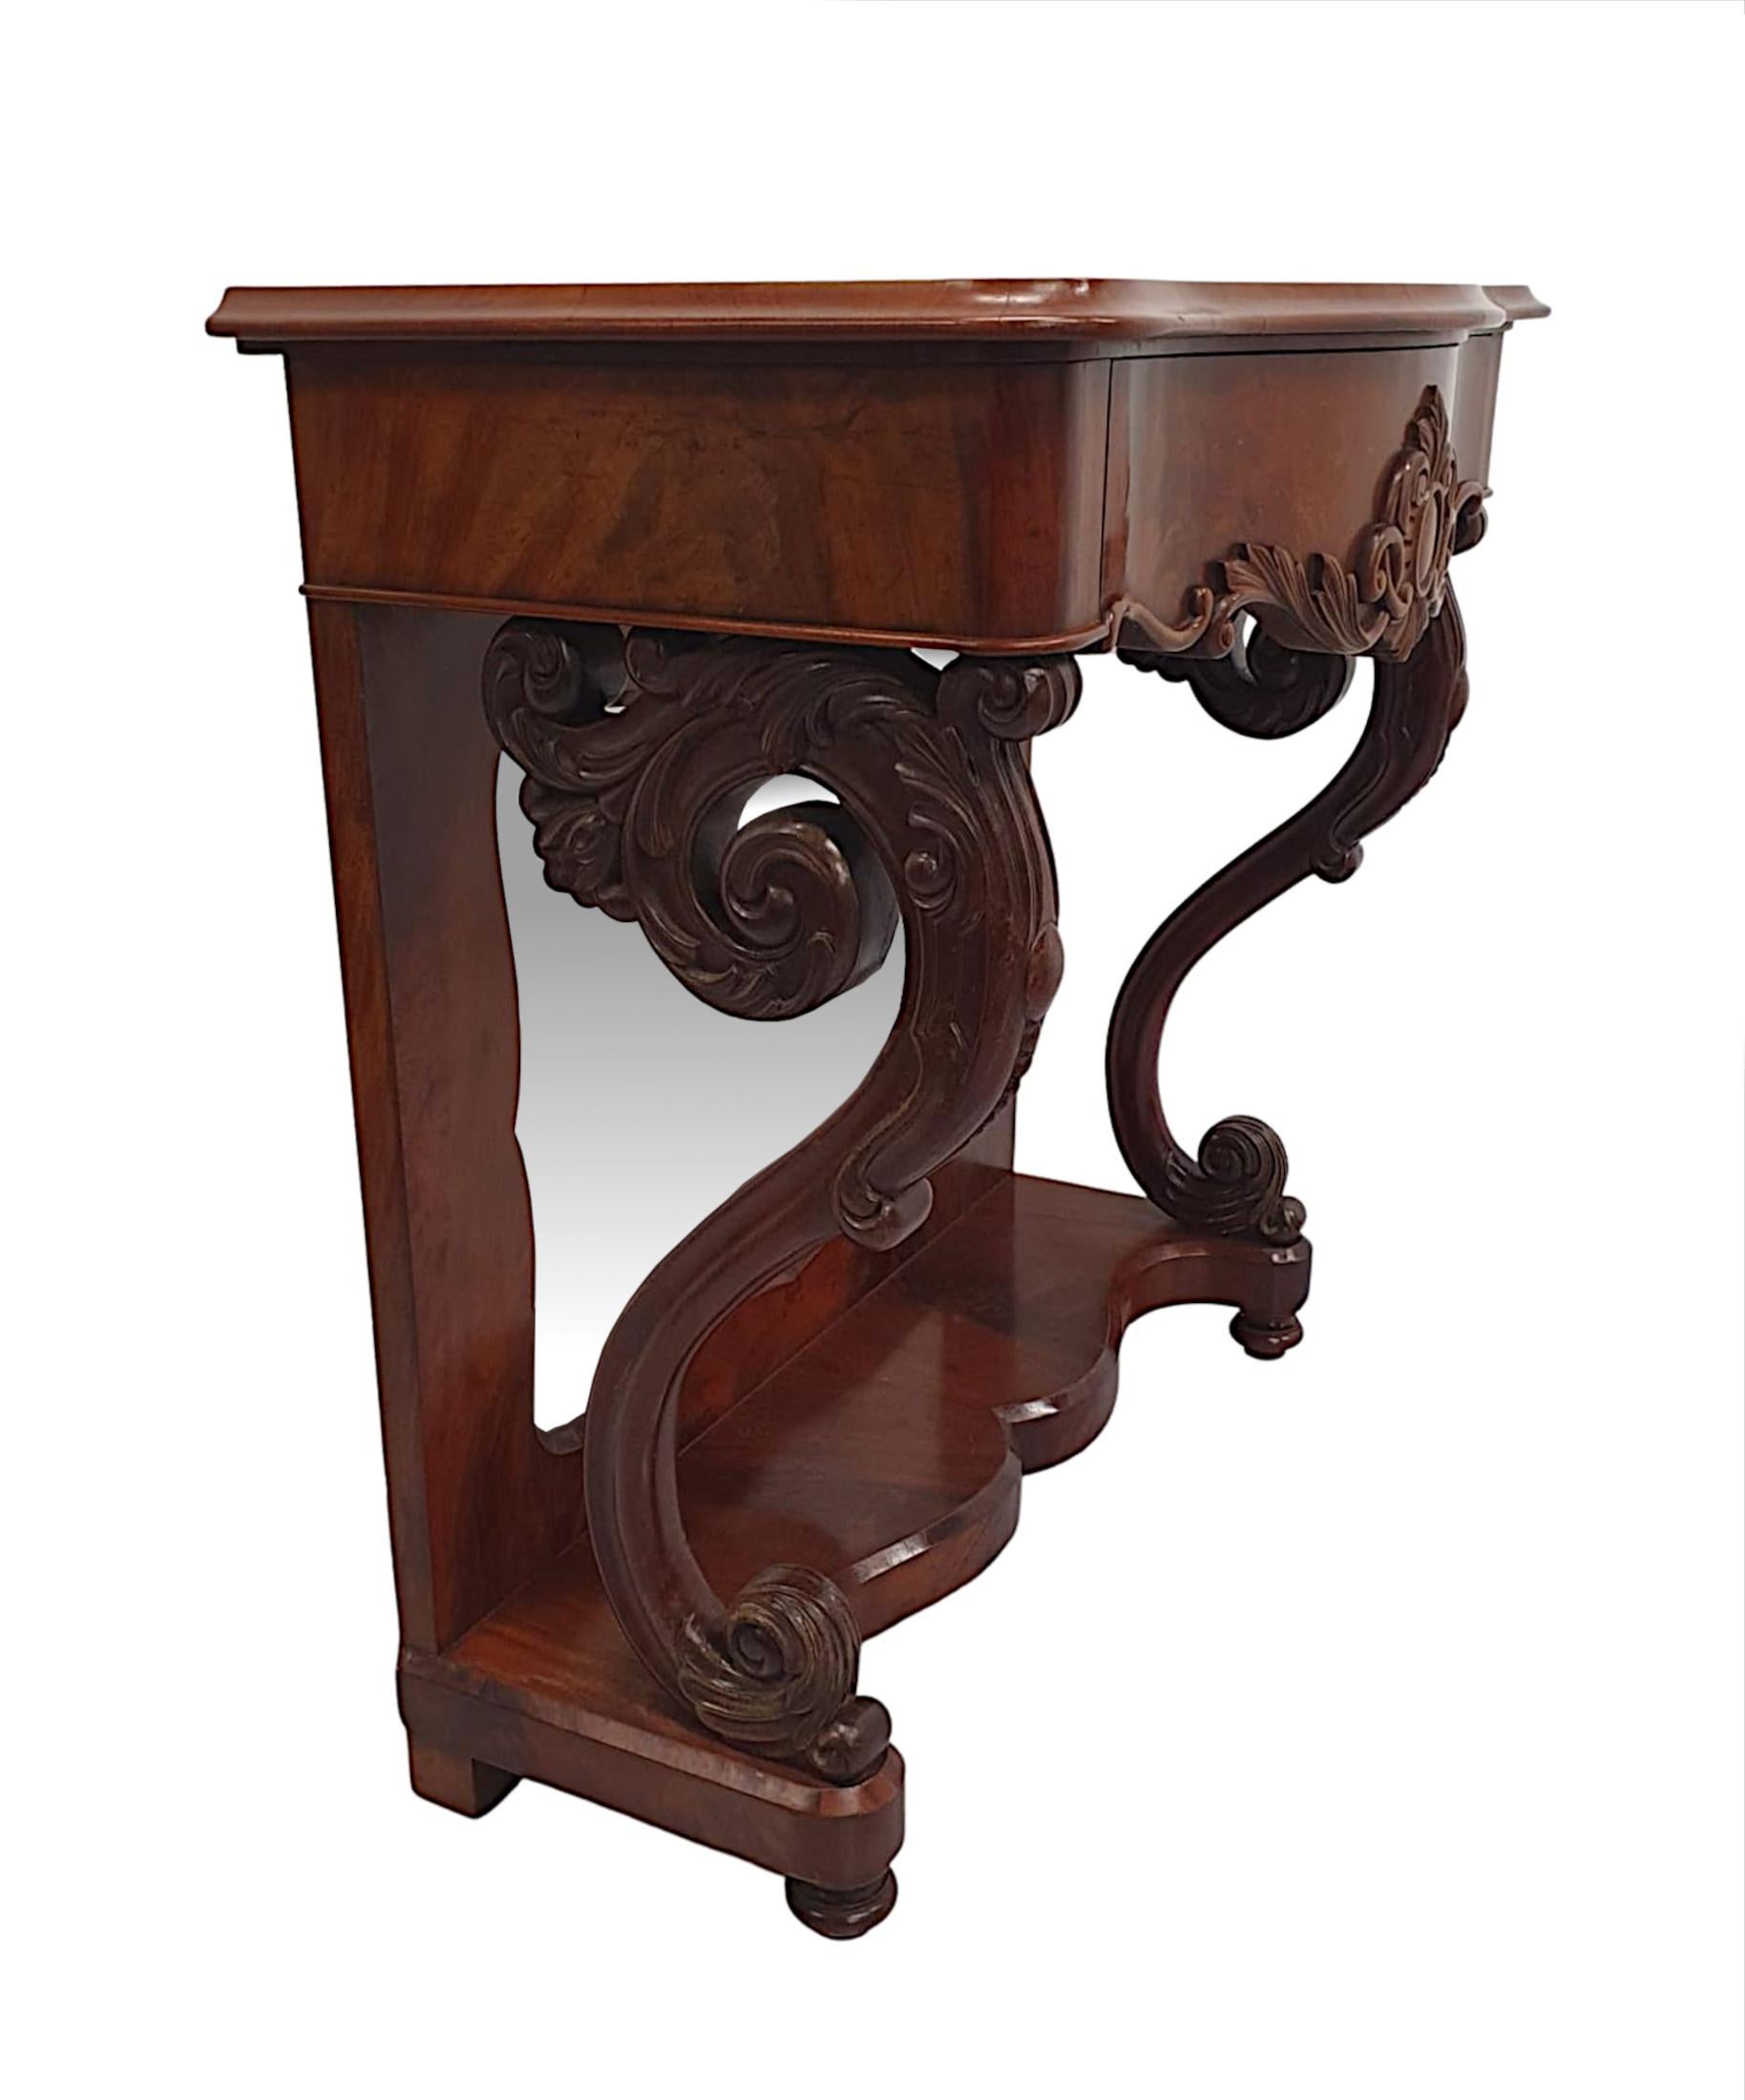 Eine sehr feine 19. Jahrhundert Flamme Mahagoni Spiegel zurück Konsole Tisch, von herrlicher Qualität und fein von Hand geschnitzt mit schön reich Patina und Maserung.  Die geformte serpentine Oberseite der rechteckigen Form ist über einem elegant